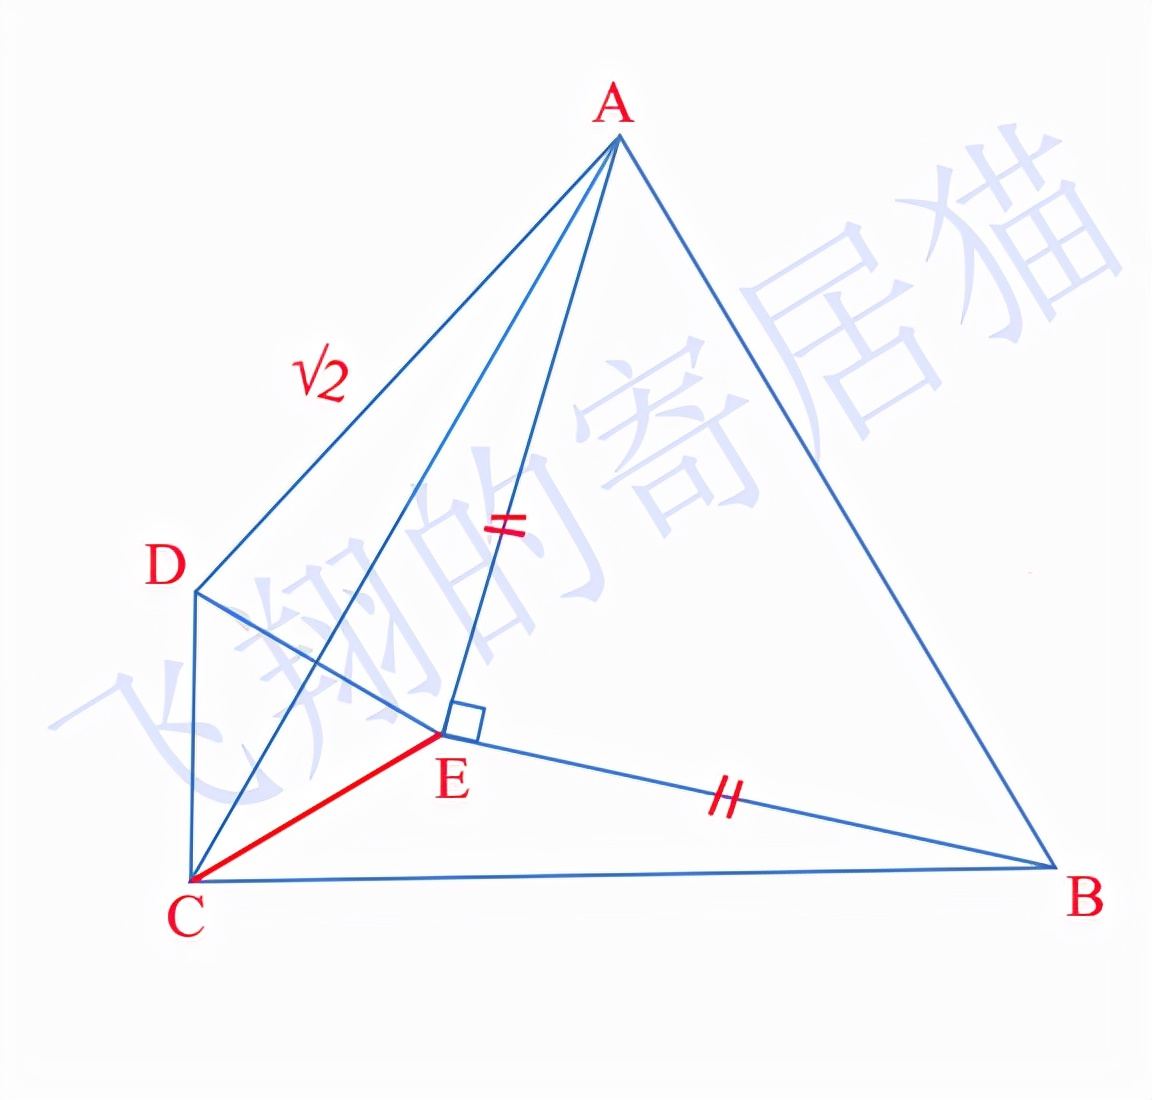 两个等边三角形，已知两个顶点连线长度，如何求等边三角形边长？